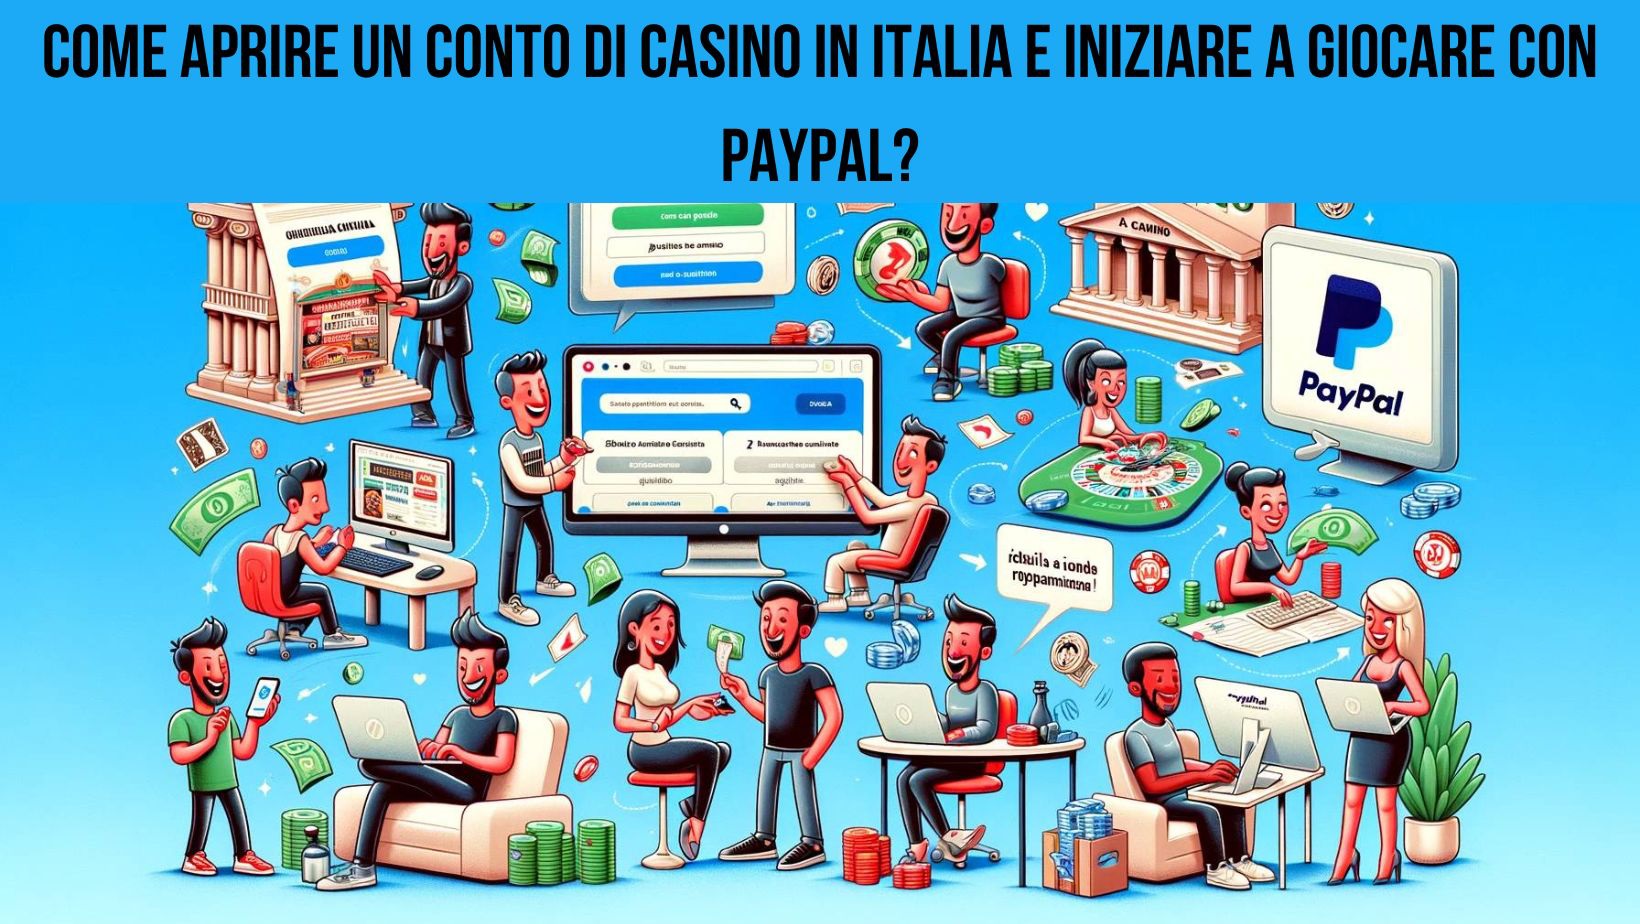 Come aprire un conto di casino in Italia e iniziare a giocare con Paypal